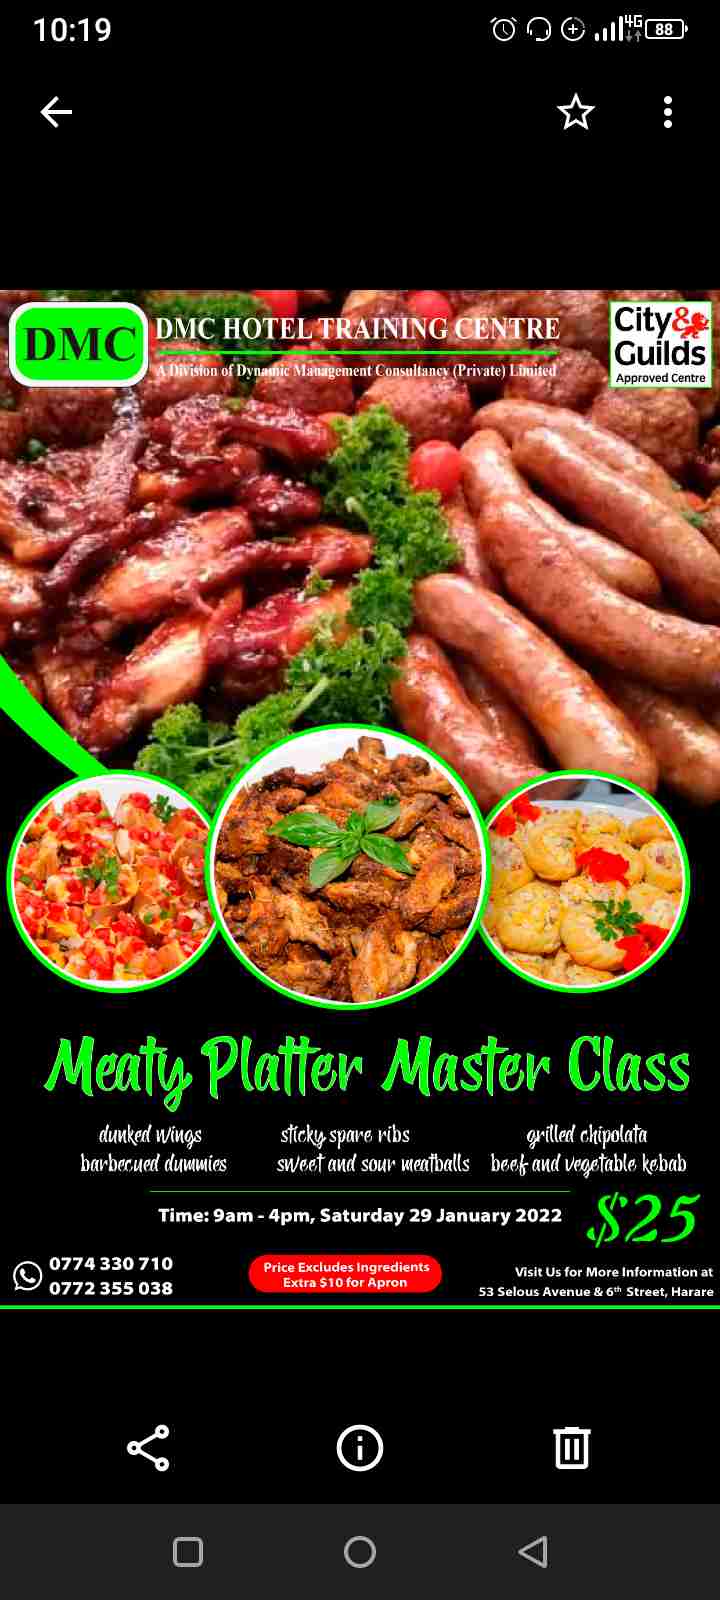 Platter Master Class